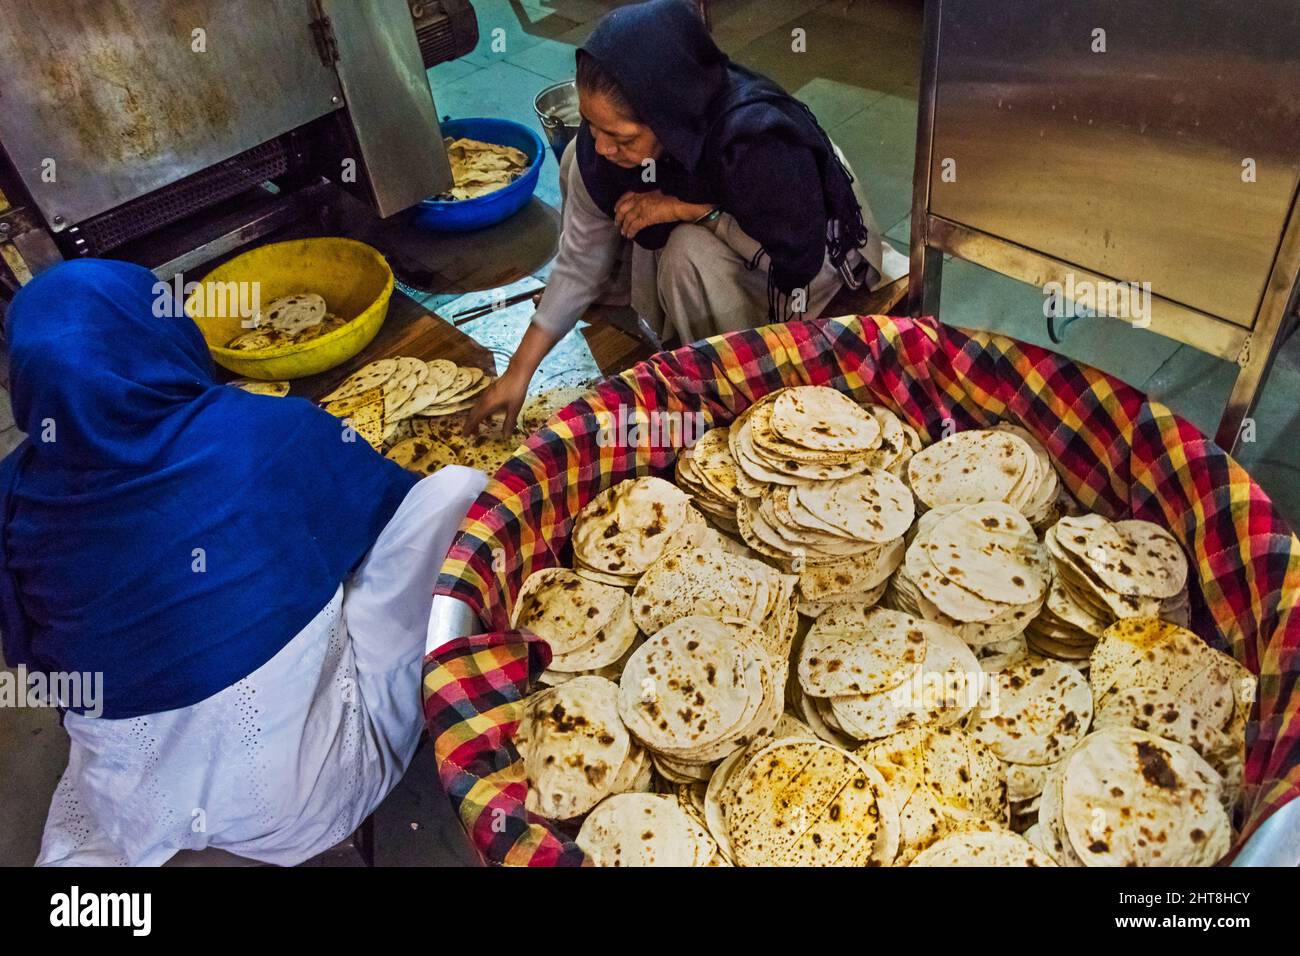 Chargement de pain chapatti dans un grand panier pour nourrir les pèlerins dans la cuisine de Gurudwara Bangla Sahib, maison de culte sikh, New Delhi, Inde (Gurudwara Banque D'Images